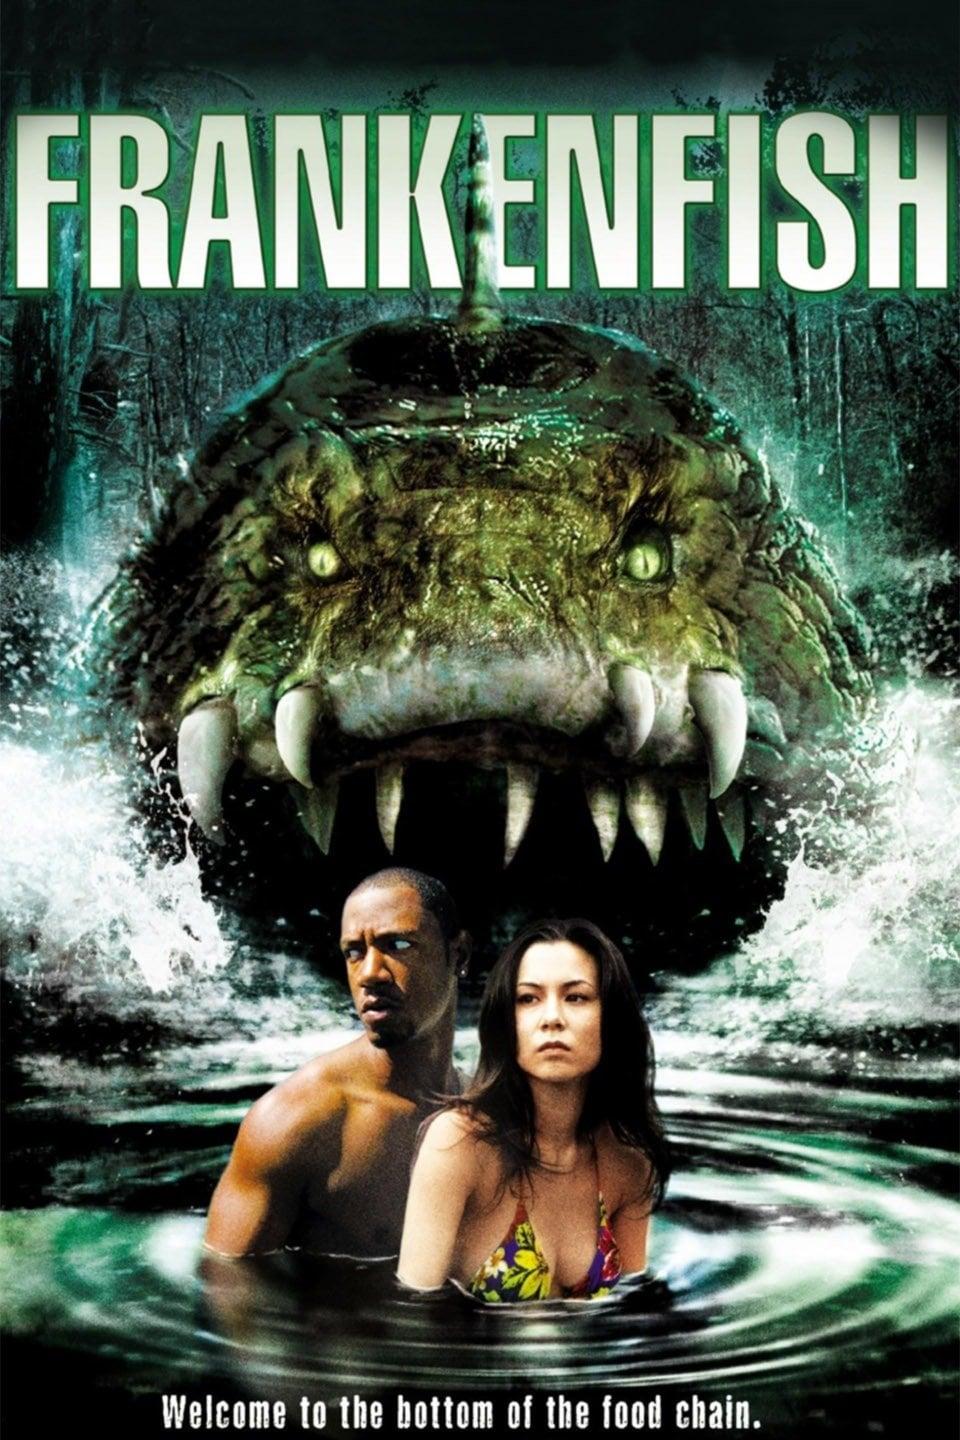 Frankenfish poster